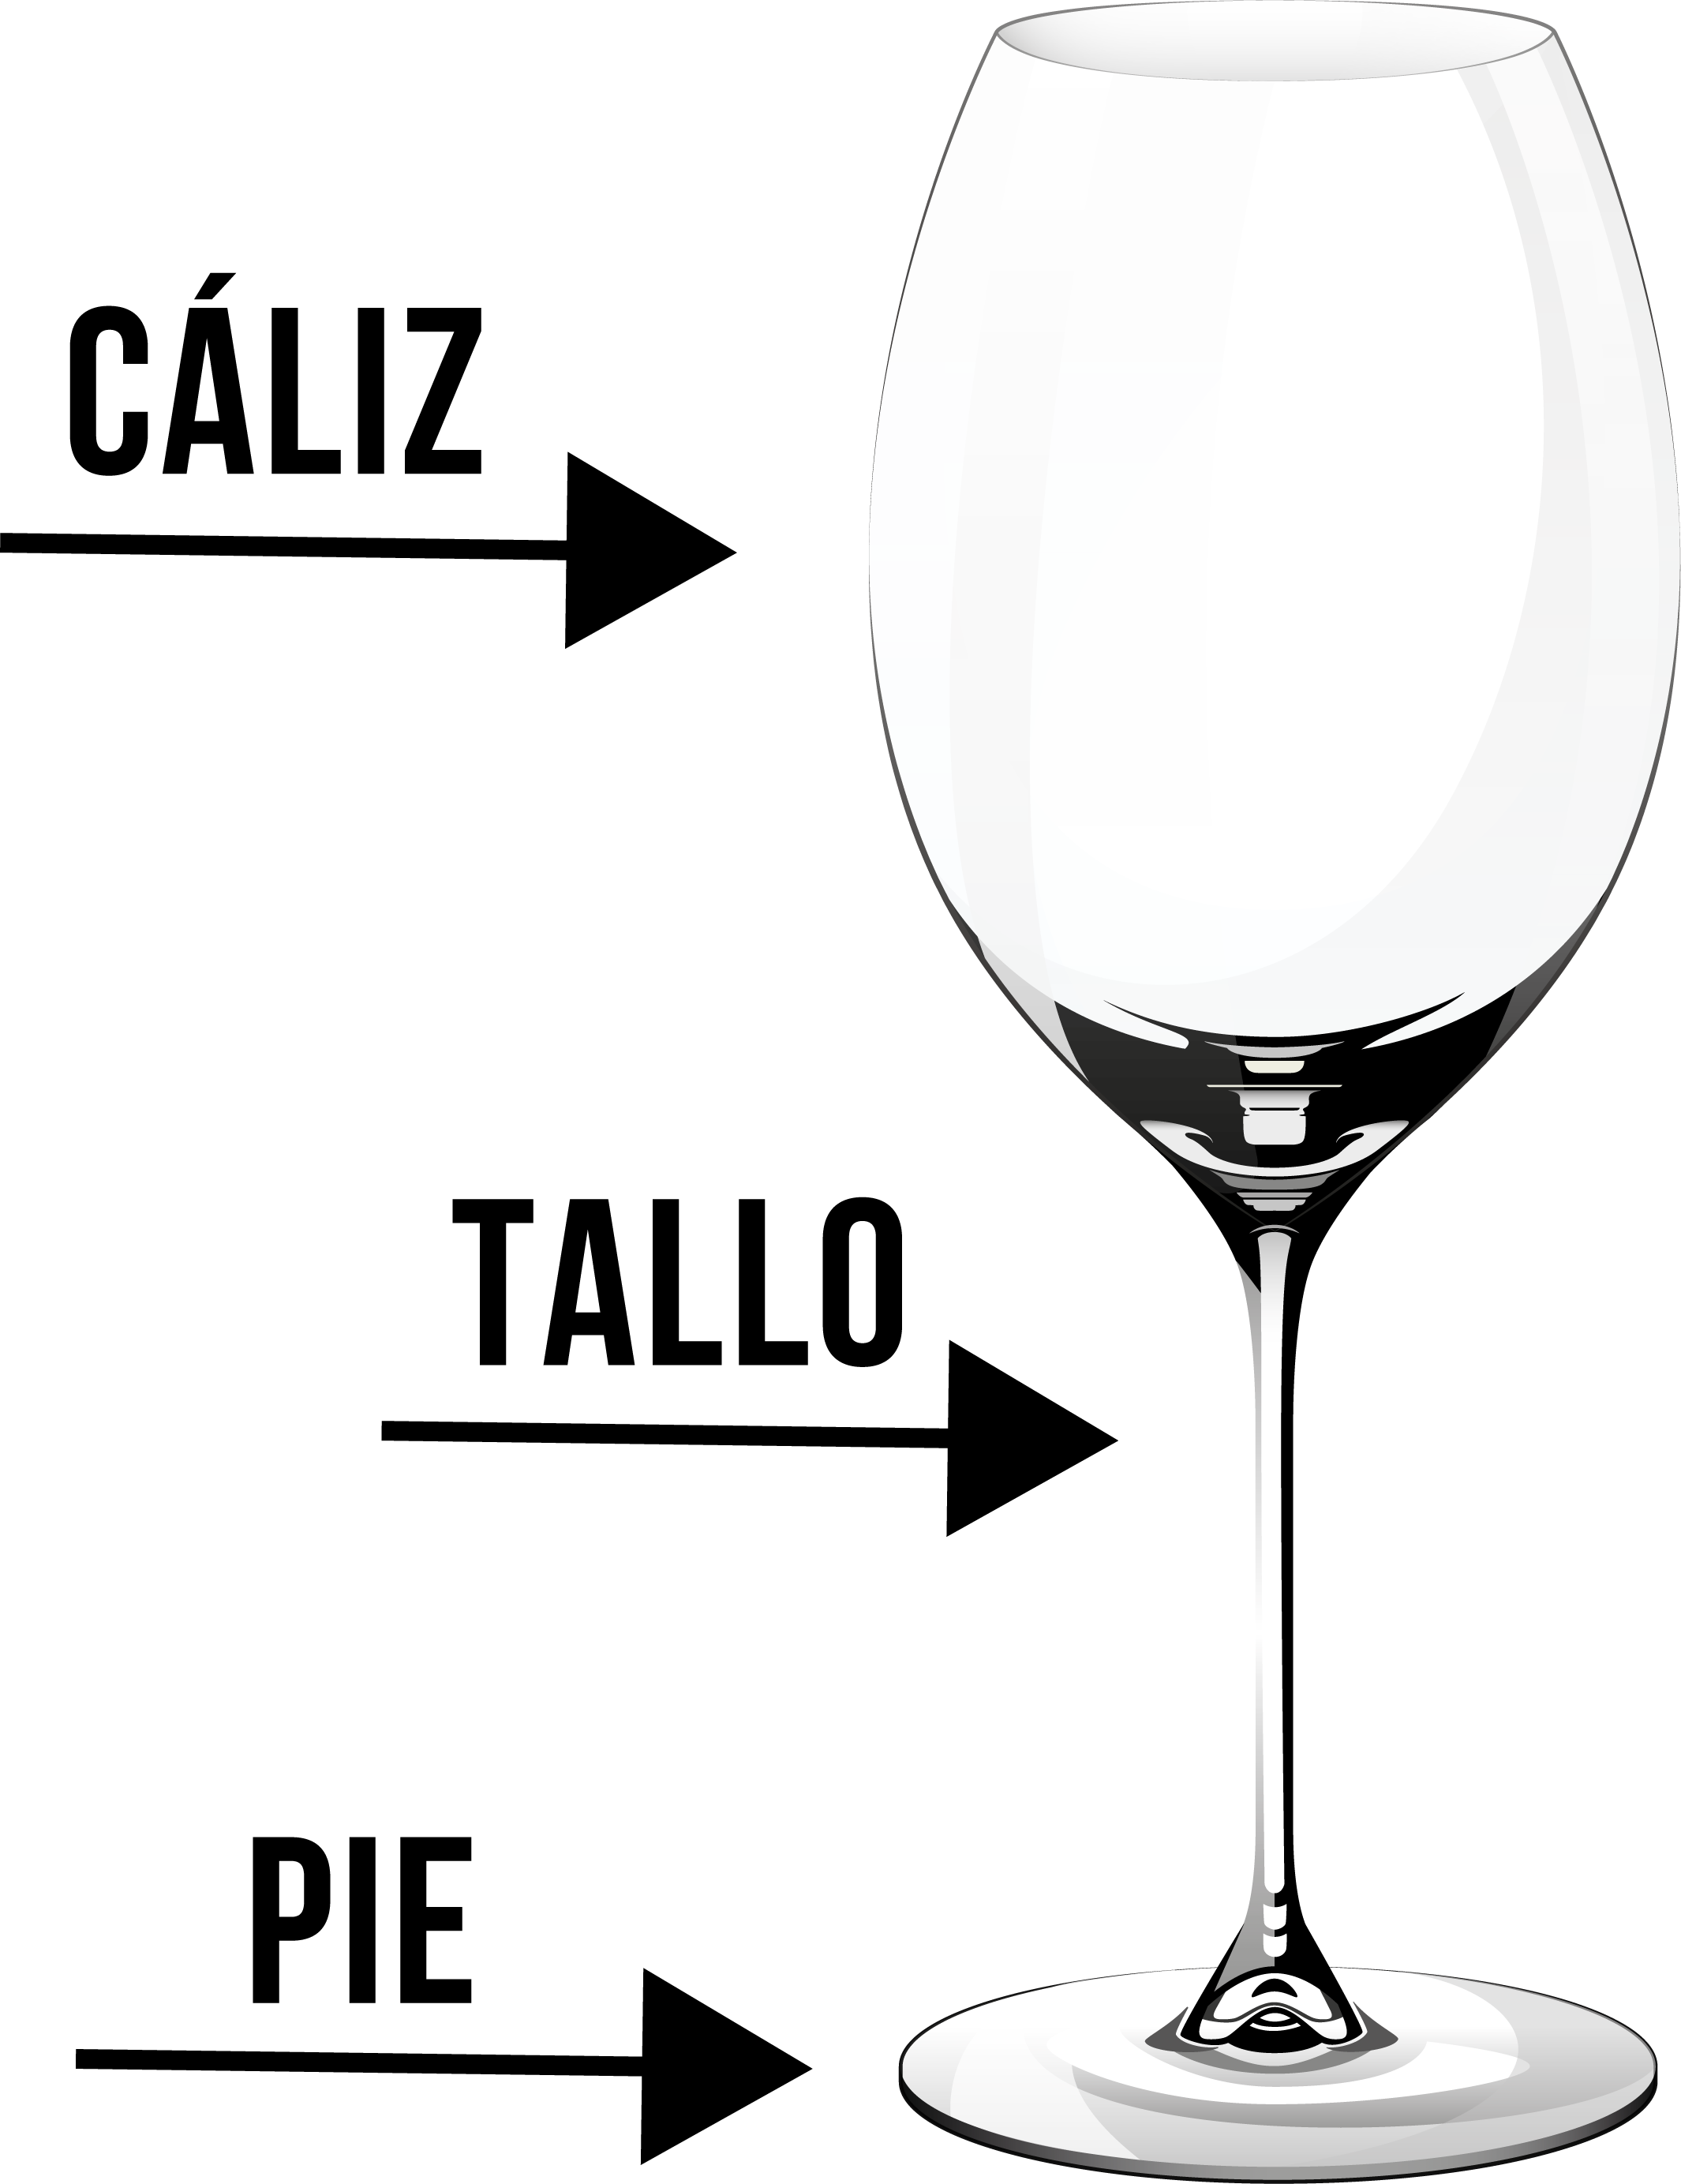 Partes principales de una copa de vino